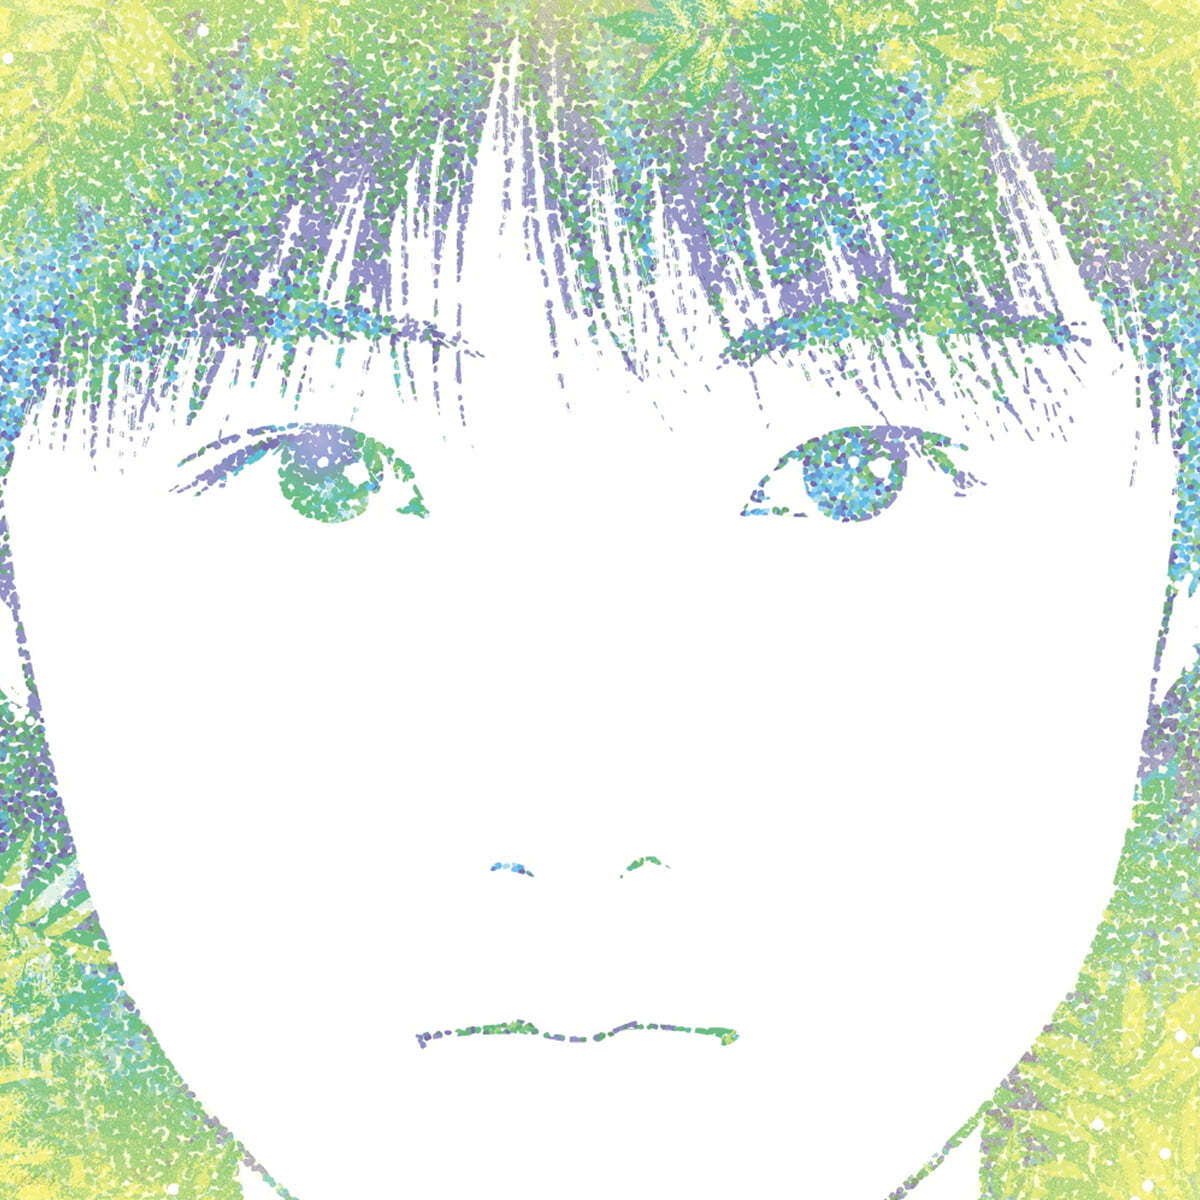 토모요 커버스 - 하라다 토모요 공식 커버 앨범 (Tomoyo Covers -Tomoyo Harada Official Cover Album) [LP]